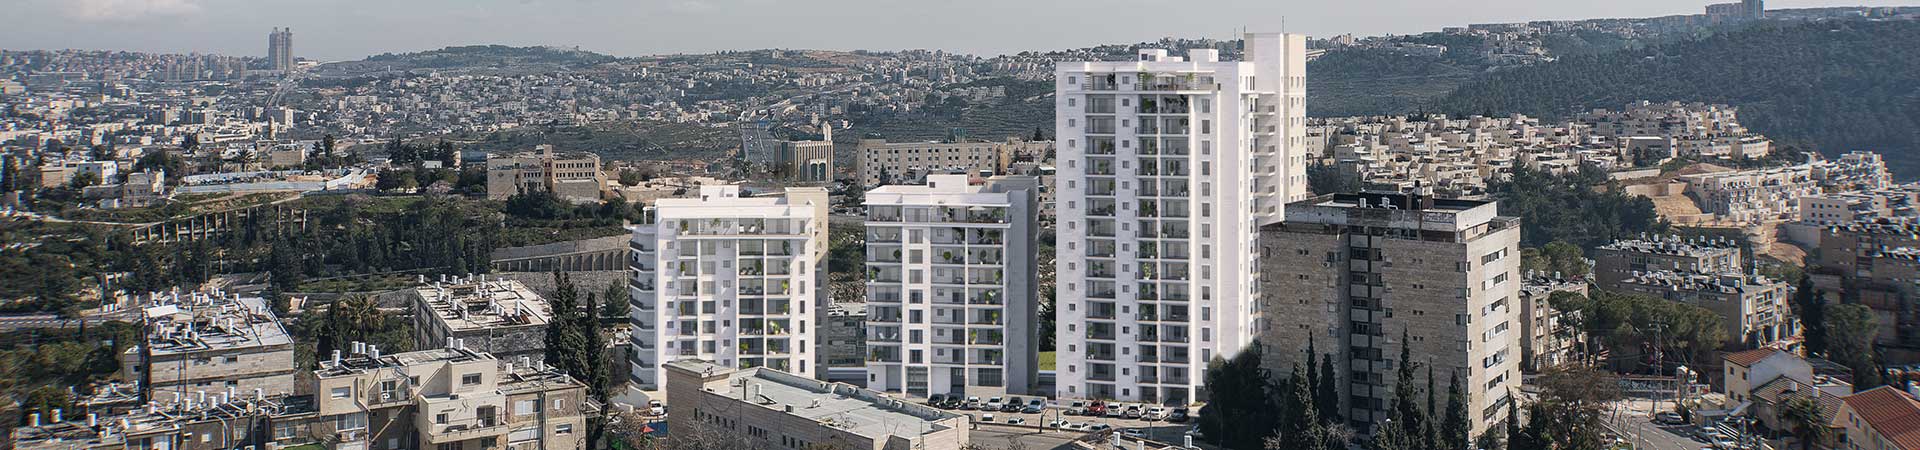 דירות חדשות למכירה בירושלים